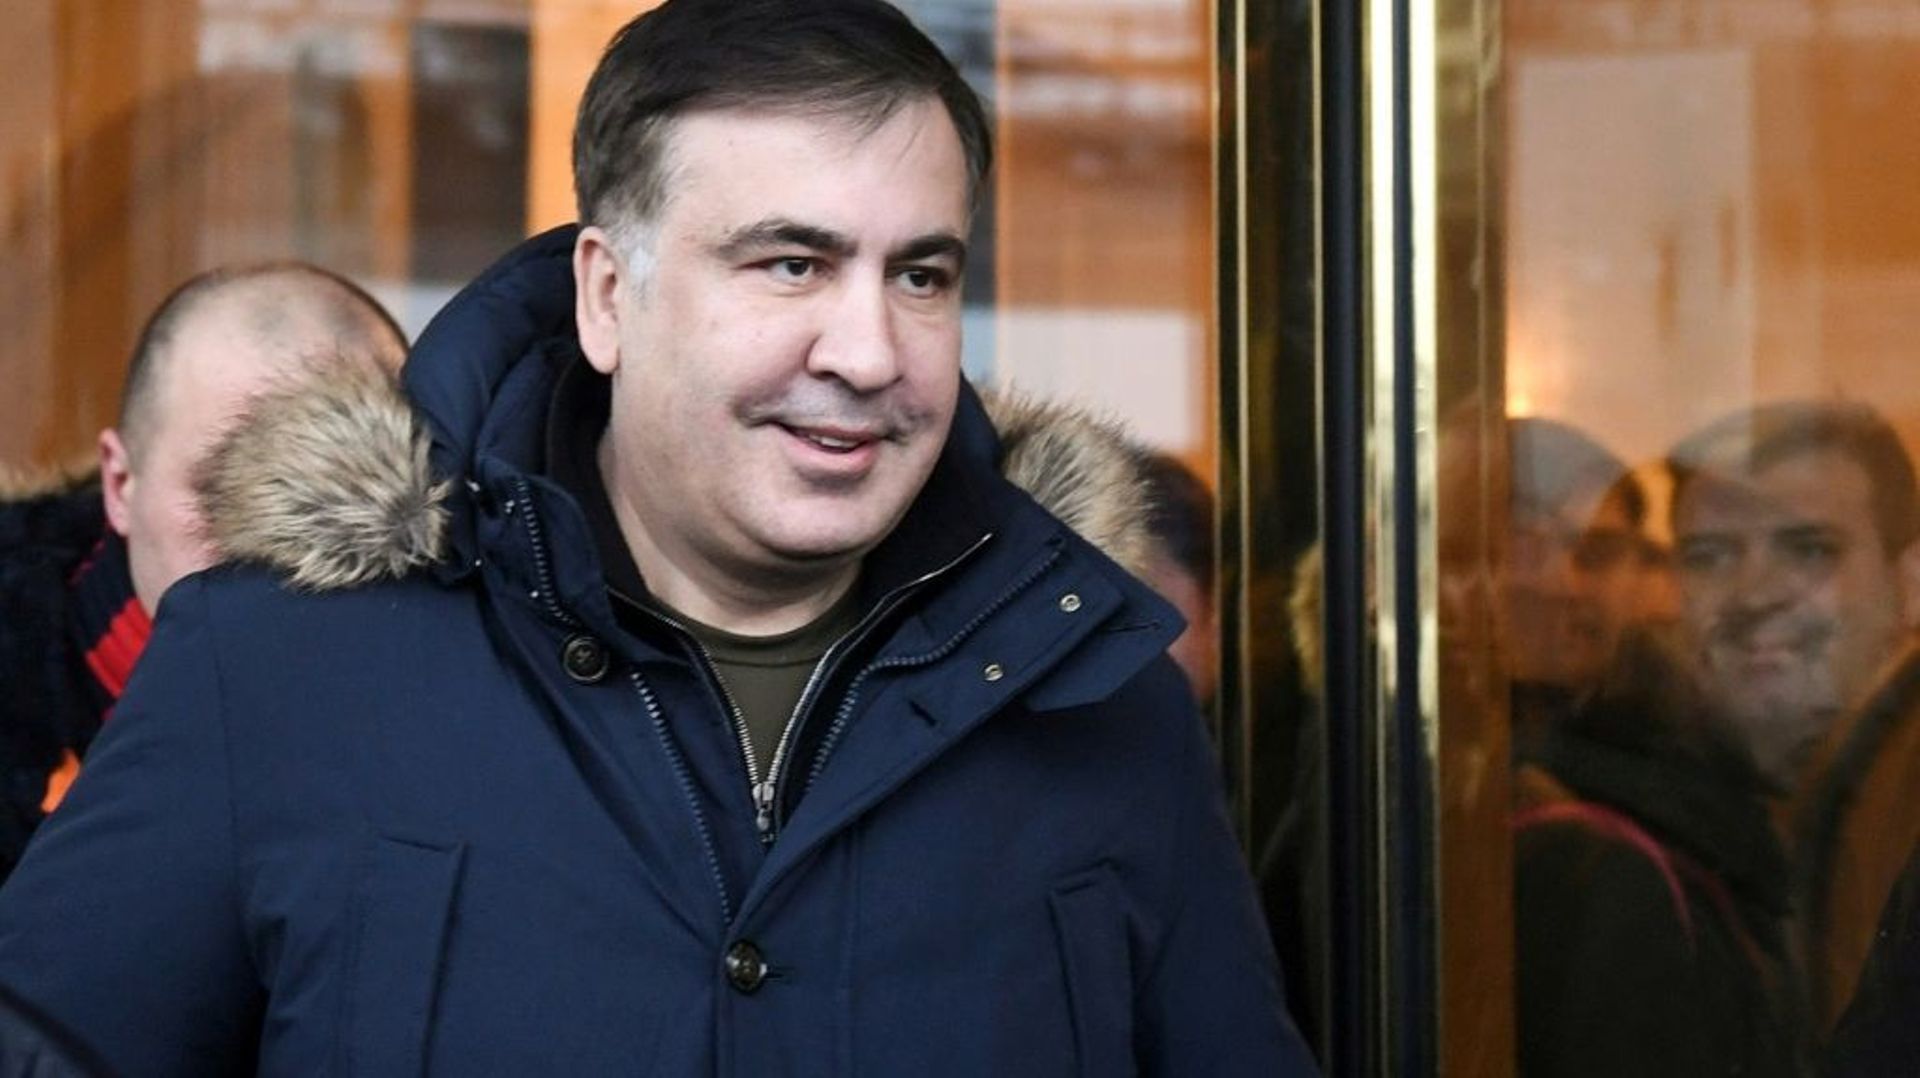 L'opposant Mikheïl Saakachvili, accusé par les autorités ukrainiennes d'avoir voulu fomenter un coup d'Etat, sortant d'un hôtel à Kiev, le 9 février 2018.
